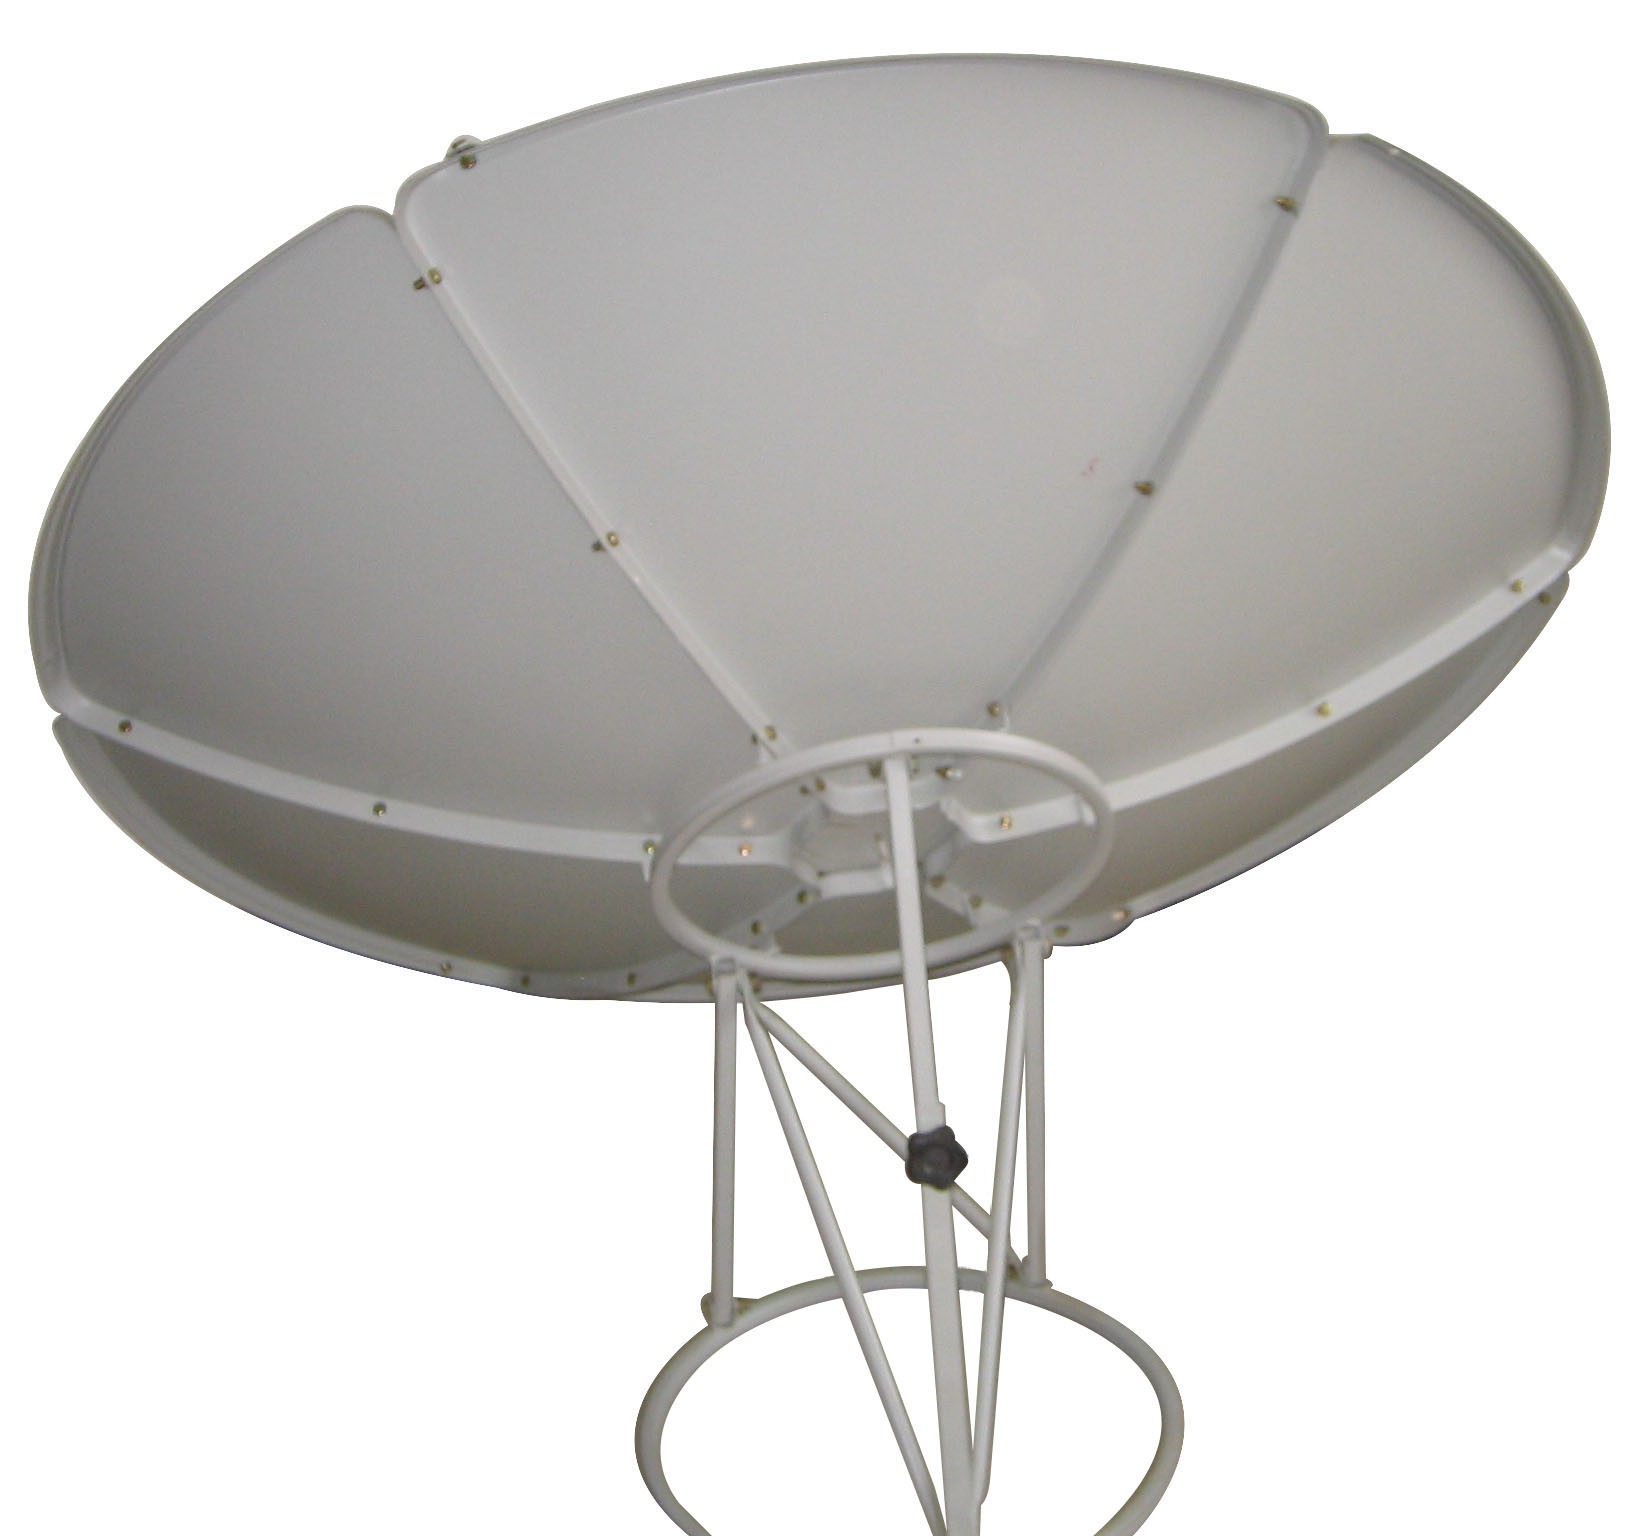 180cm C band satellite dish antenna, prime focus